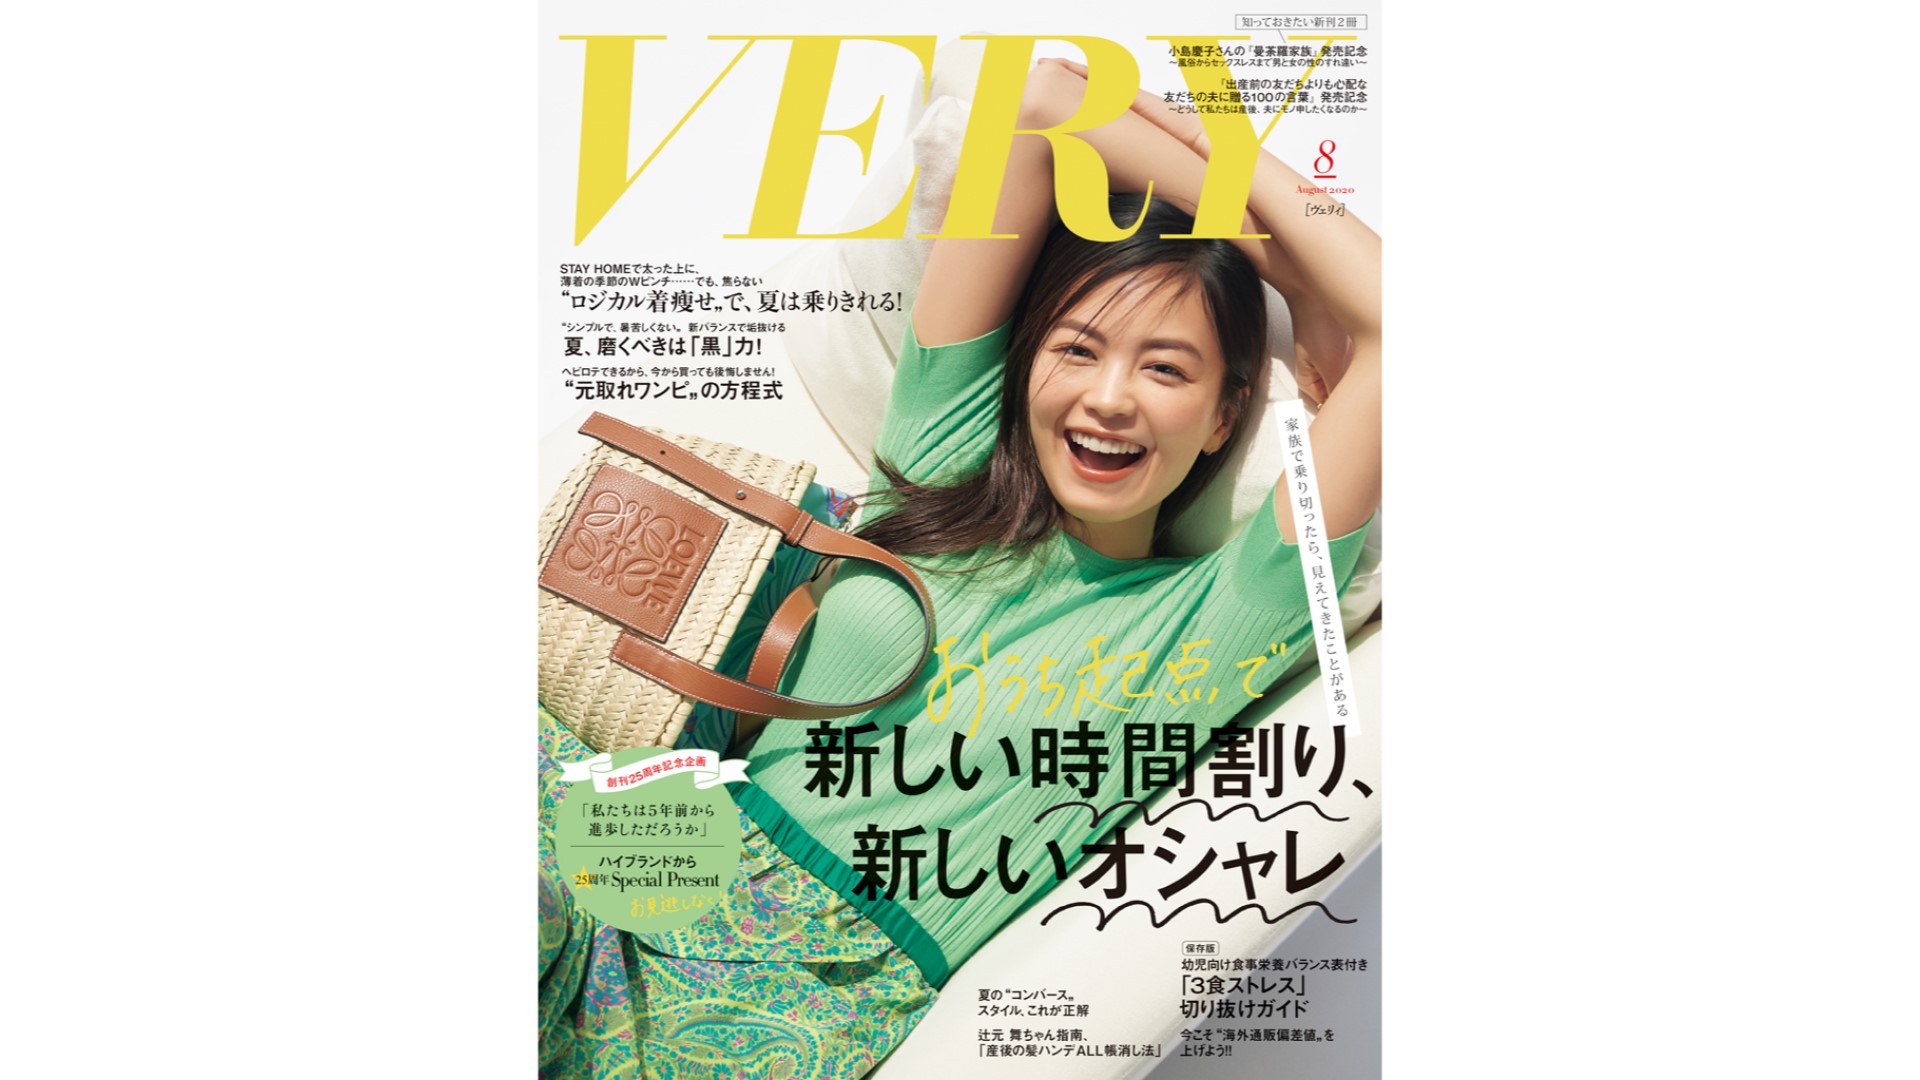 【メディア掲載情報】雑誌「VERY」にdevirockの商品が掲載されました。